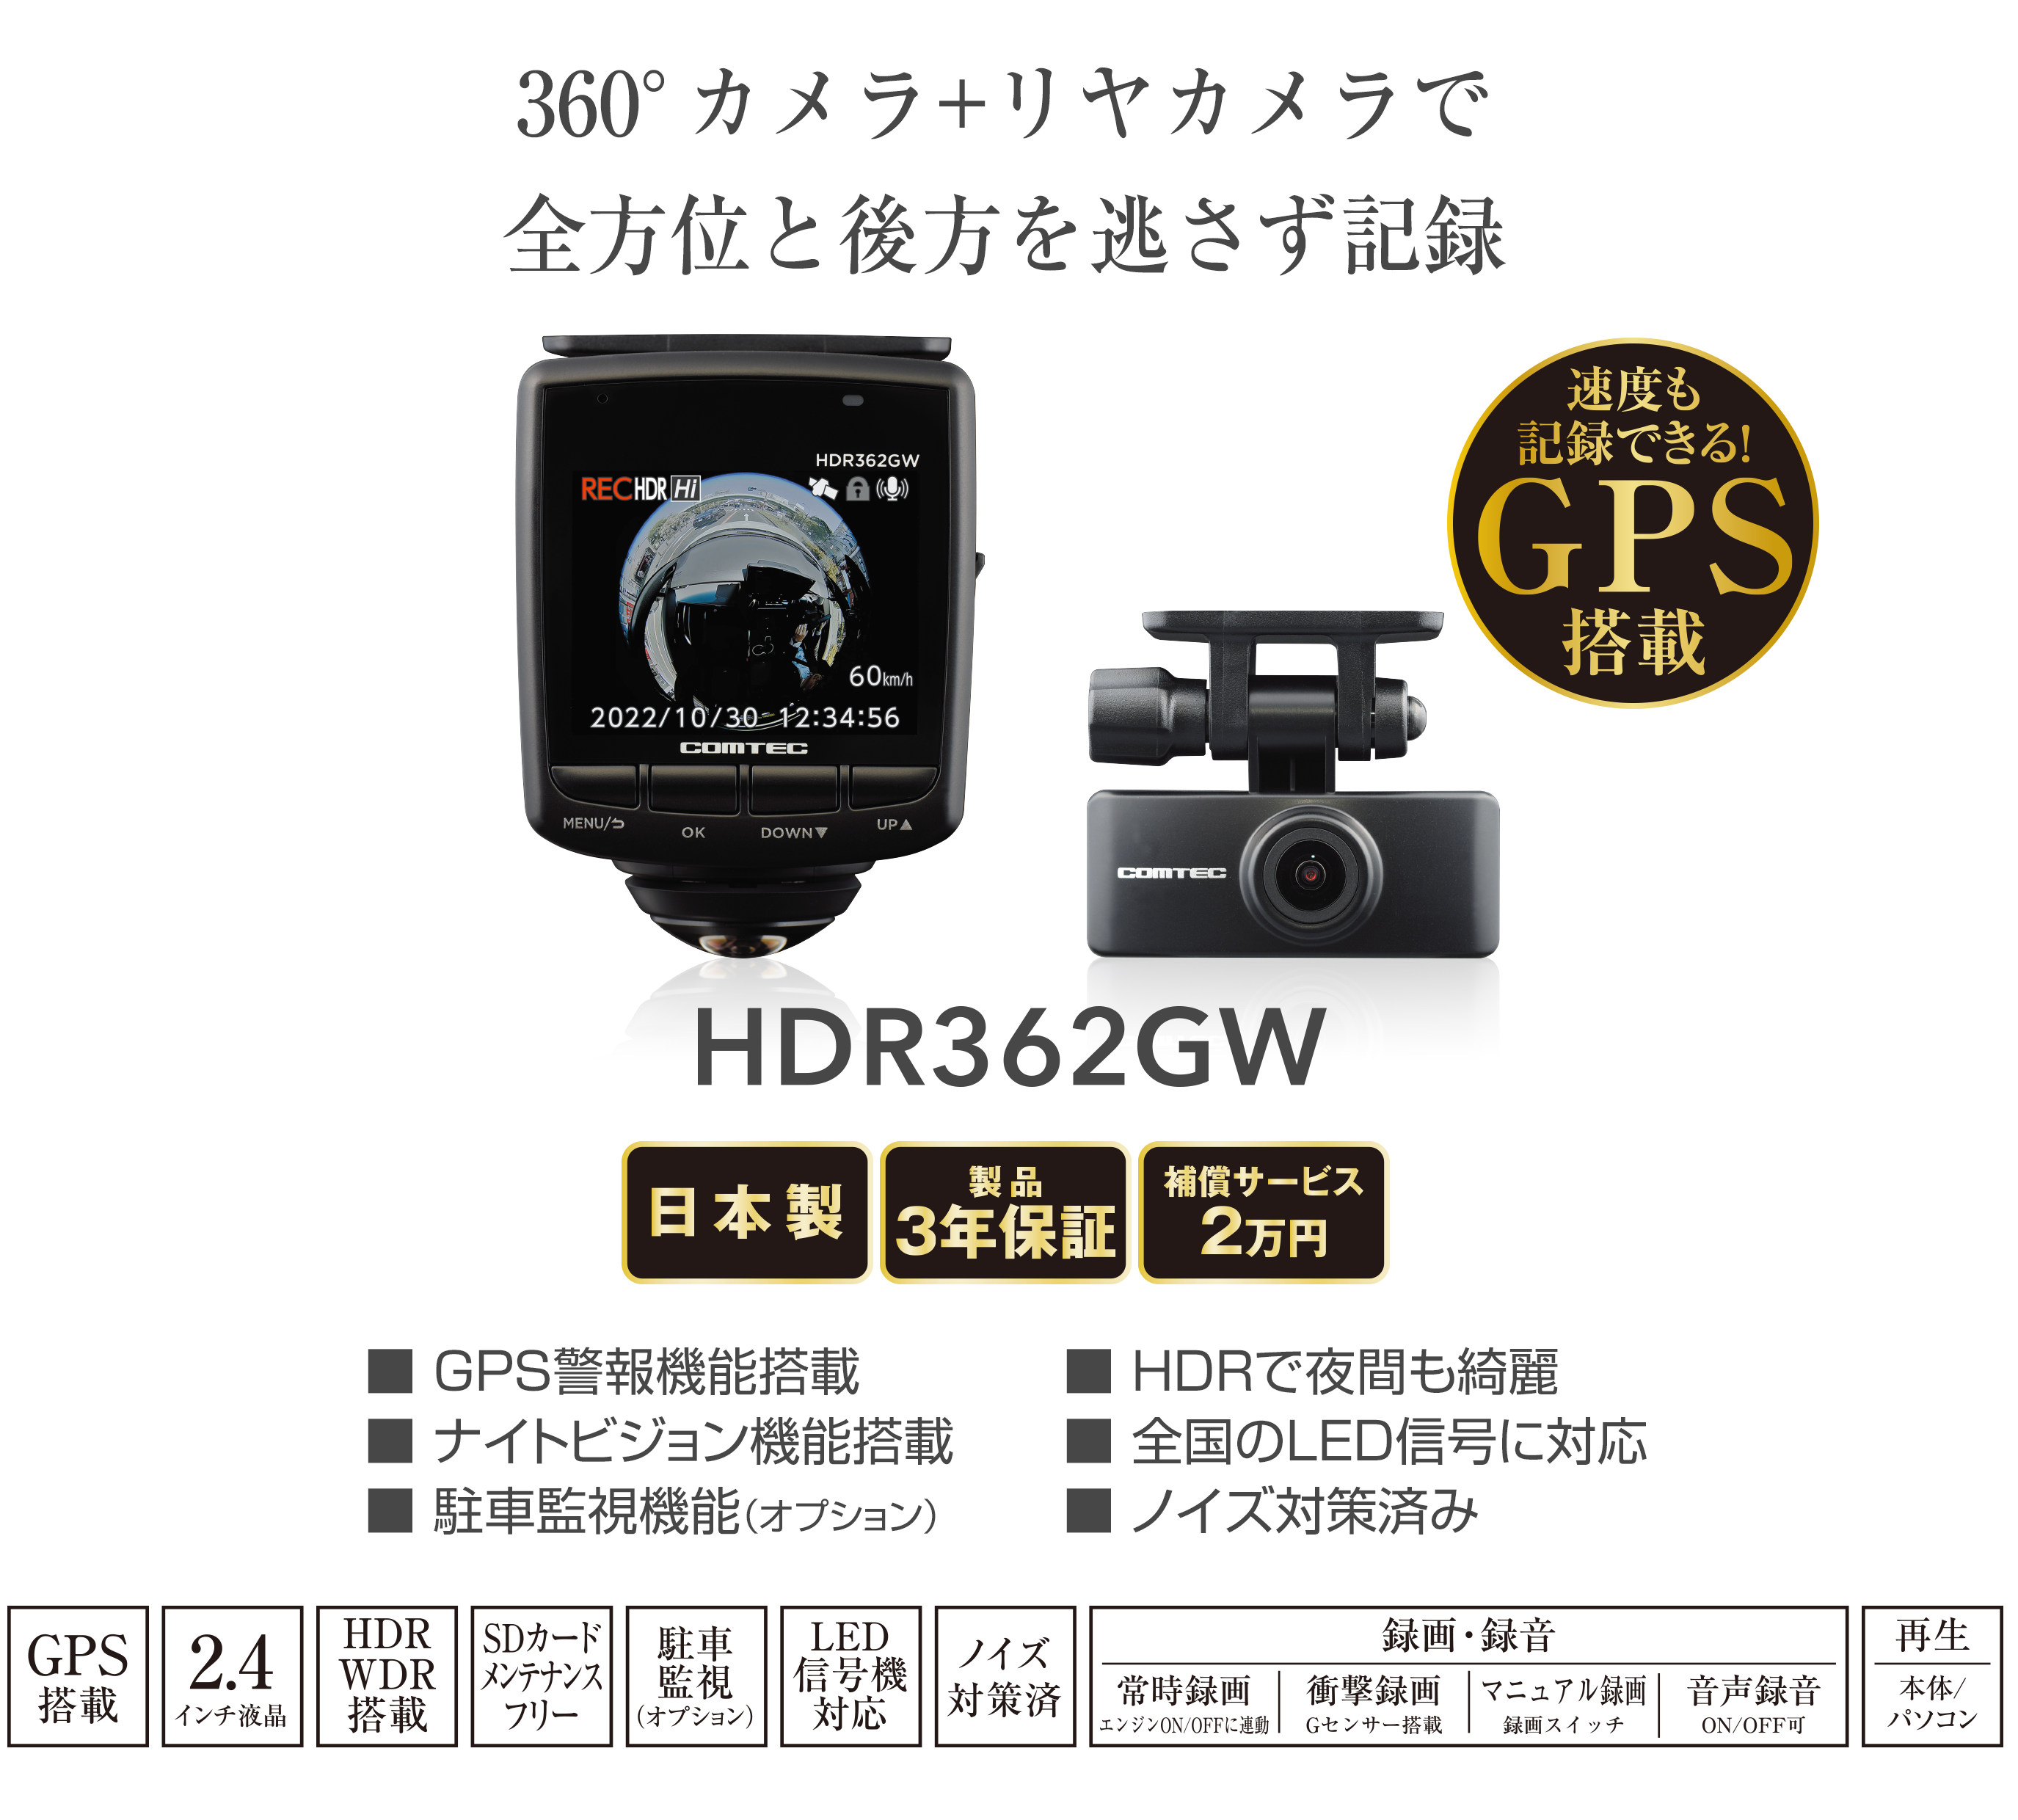 ドライブレコーダー HDR362GW